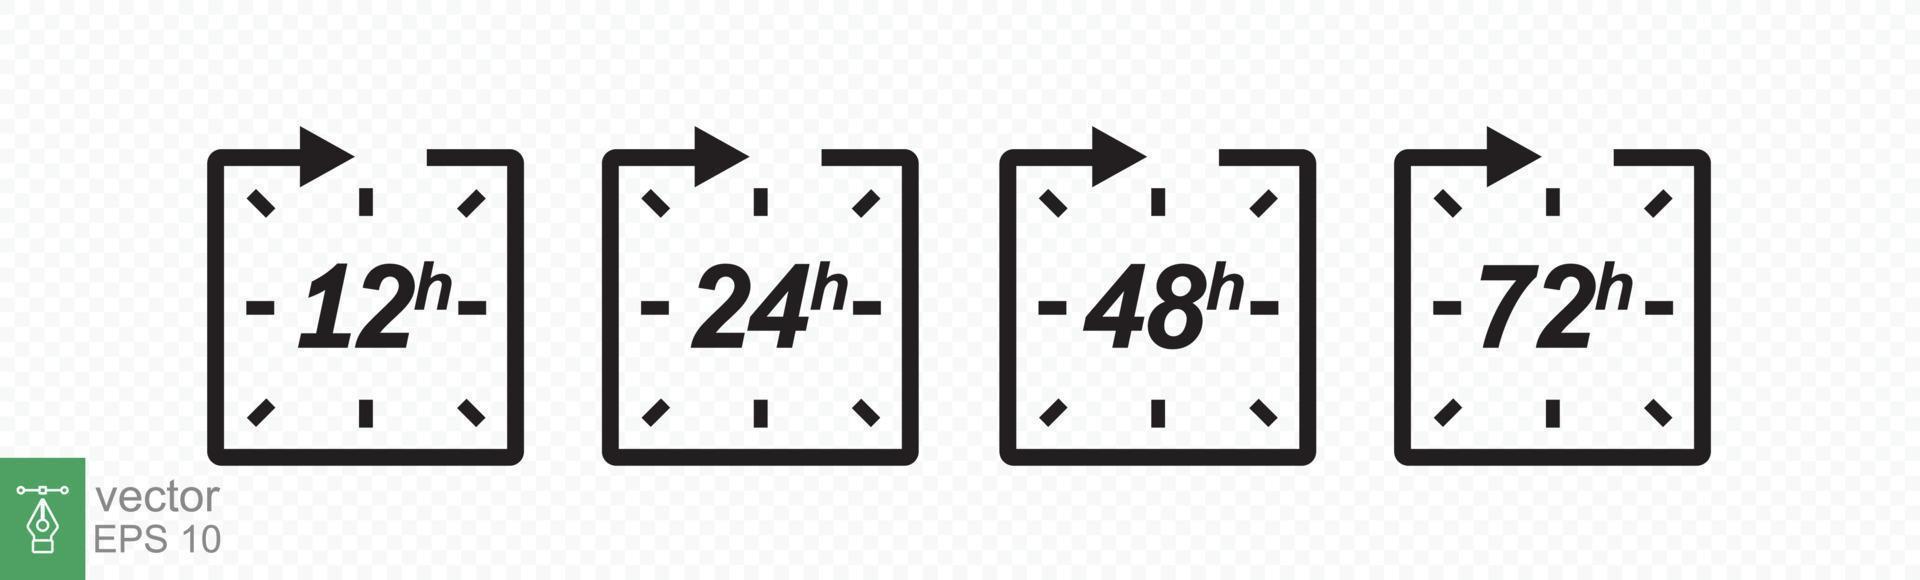 Stunden-Icon-Set. 12-, 24-, 48- und 72-Stunden-Uhrpfeil. schnelle Lieferung, Timer mit Kreispfeil. Vektor-Arbeitszeiteffekt oder Zeitsymbole für den Lieferservice. Folge 10. vektor